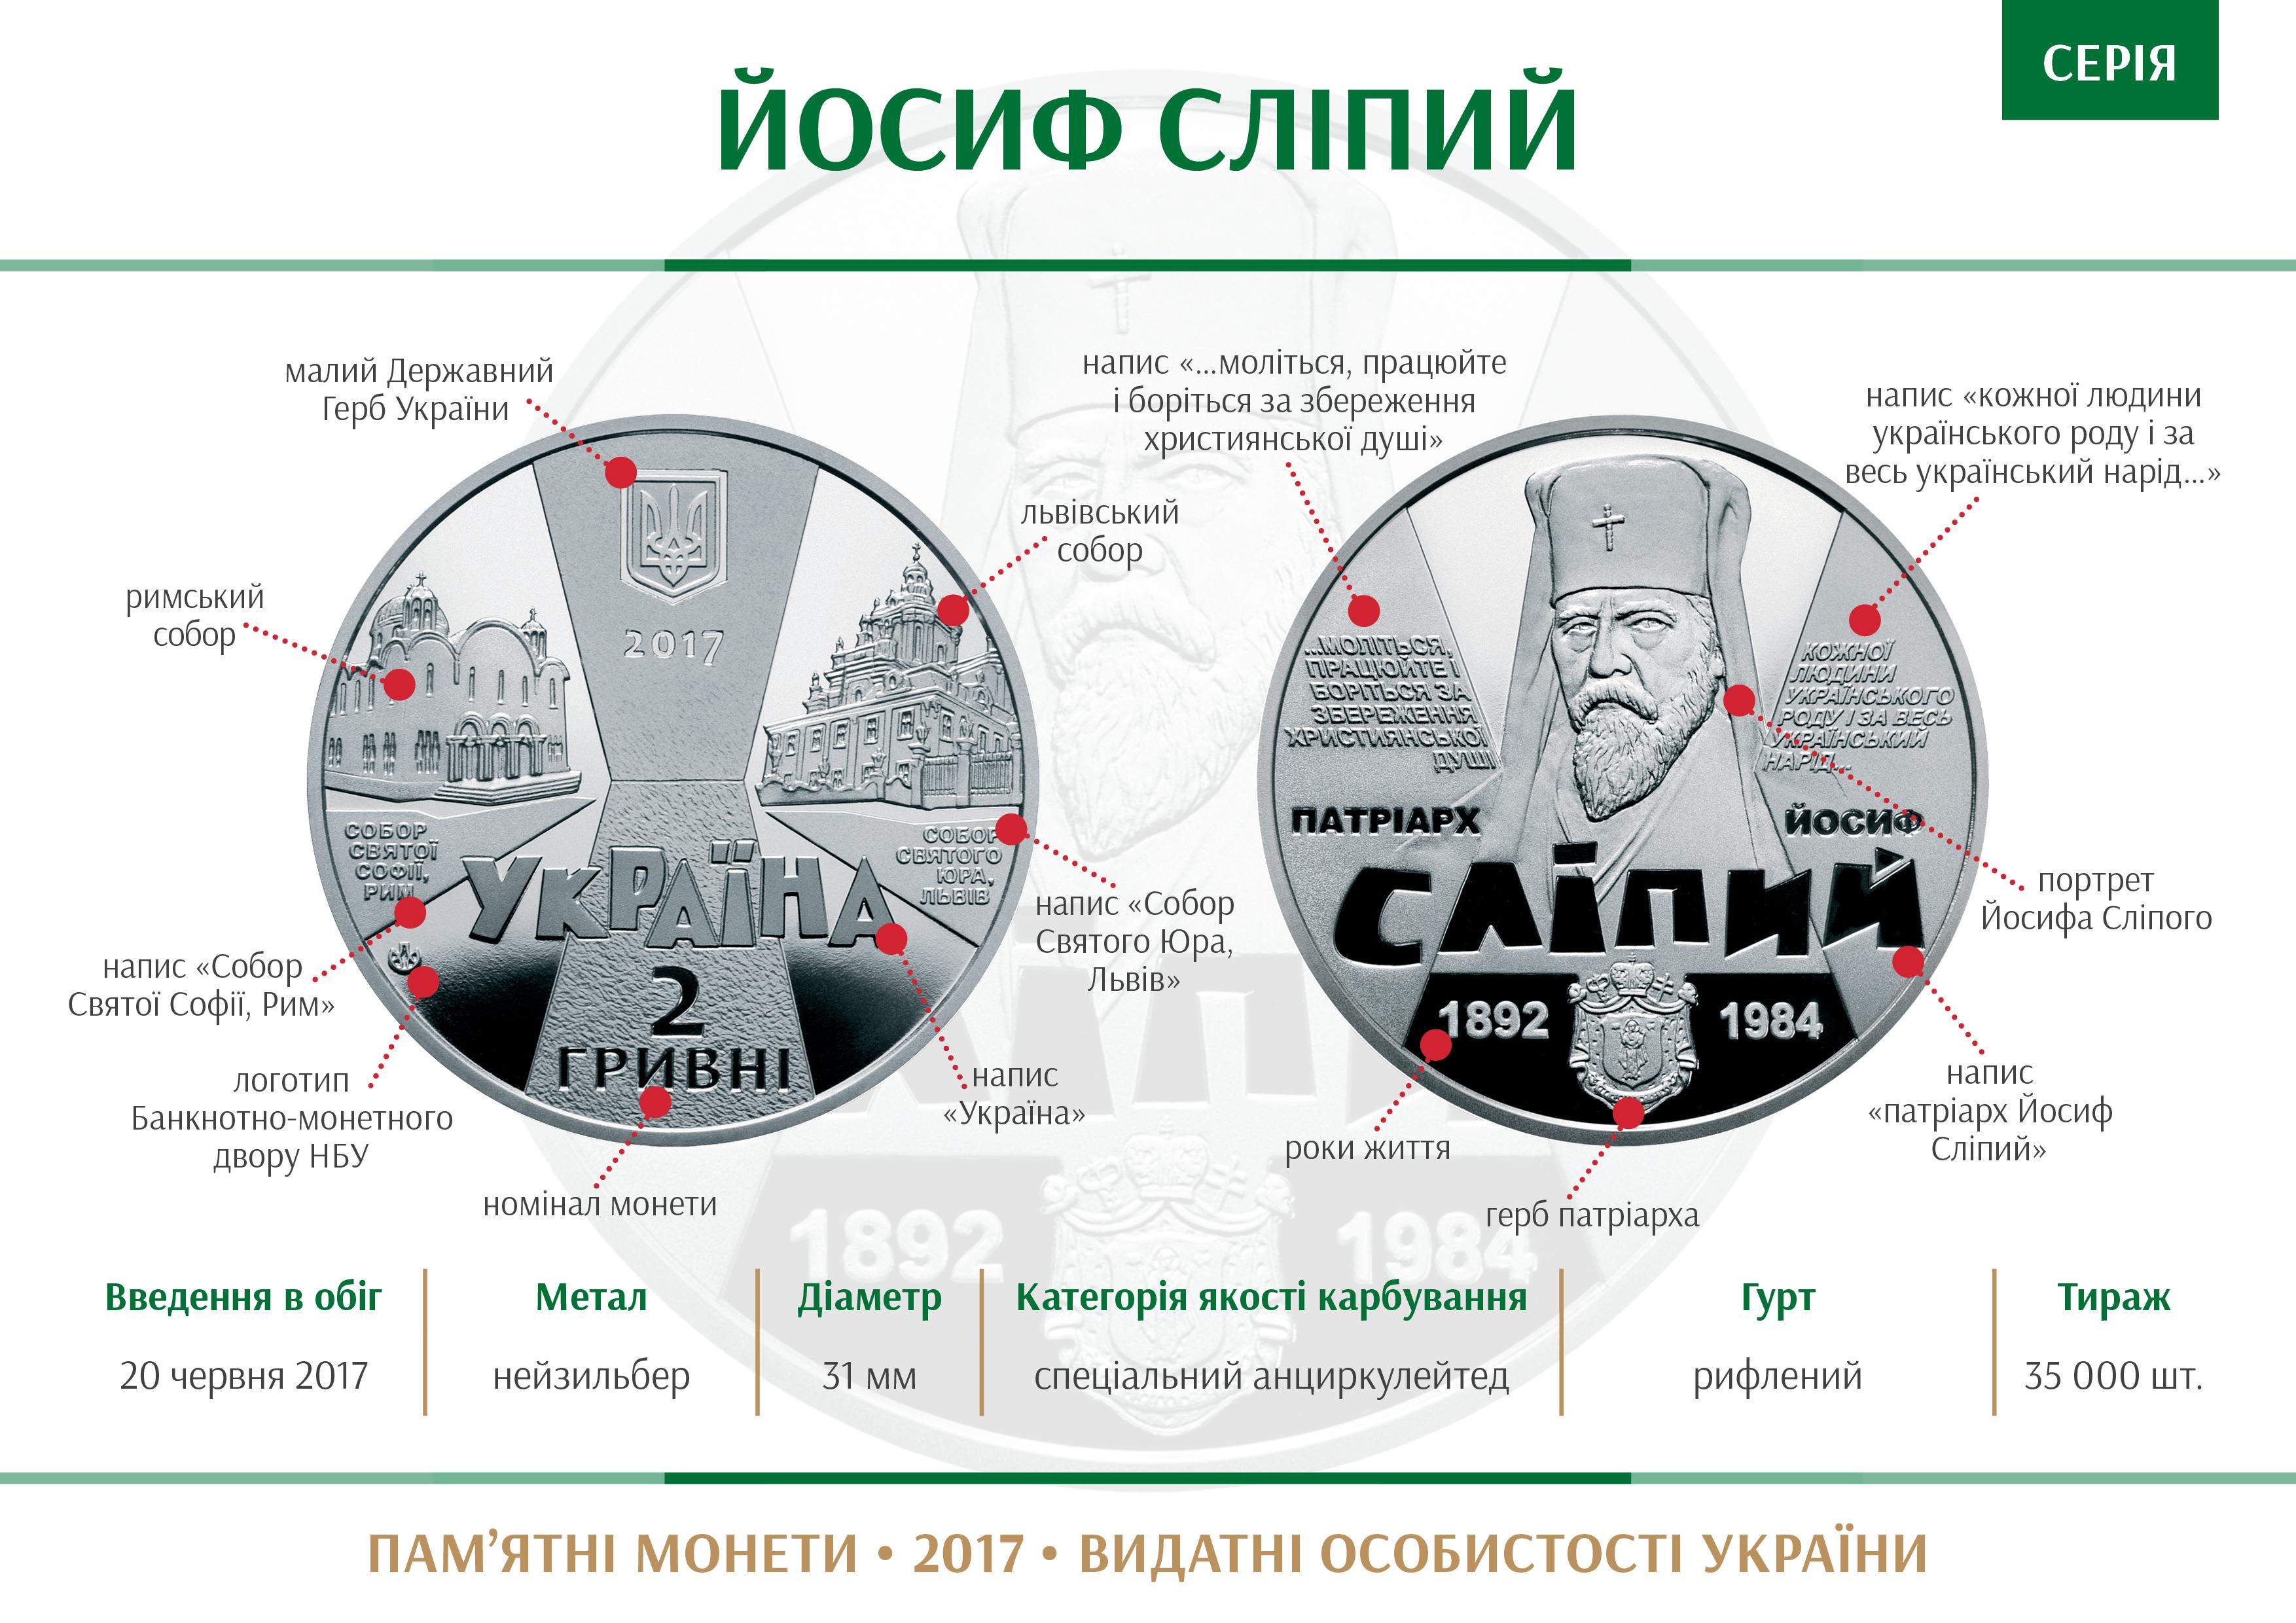 Coin series Vydatni osobystosti Ukrai27ny Josyf Slipyj